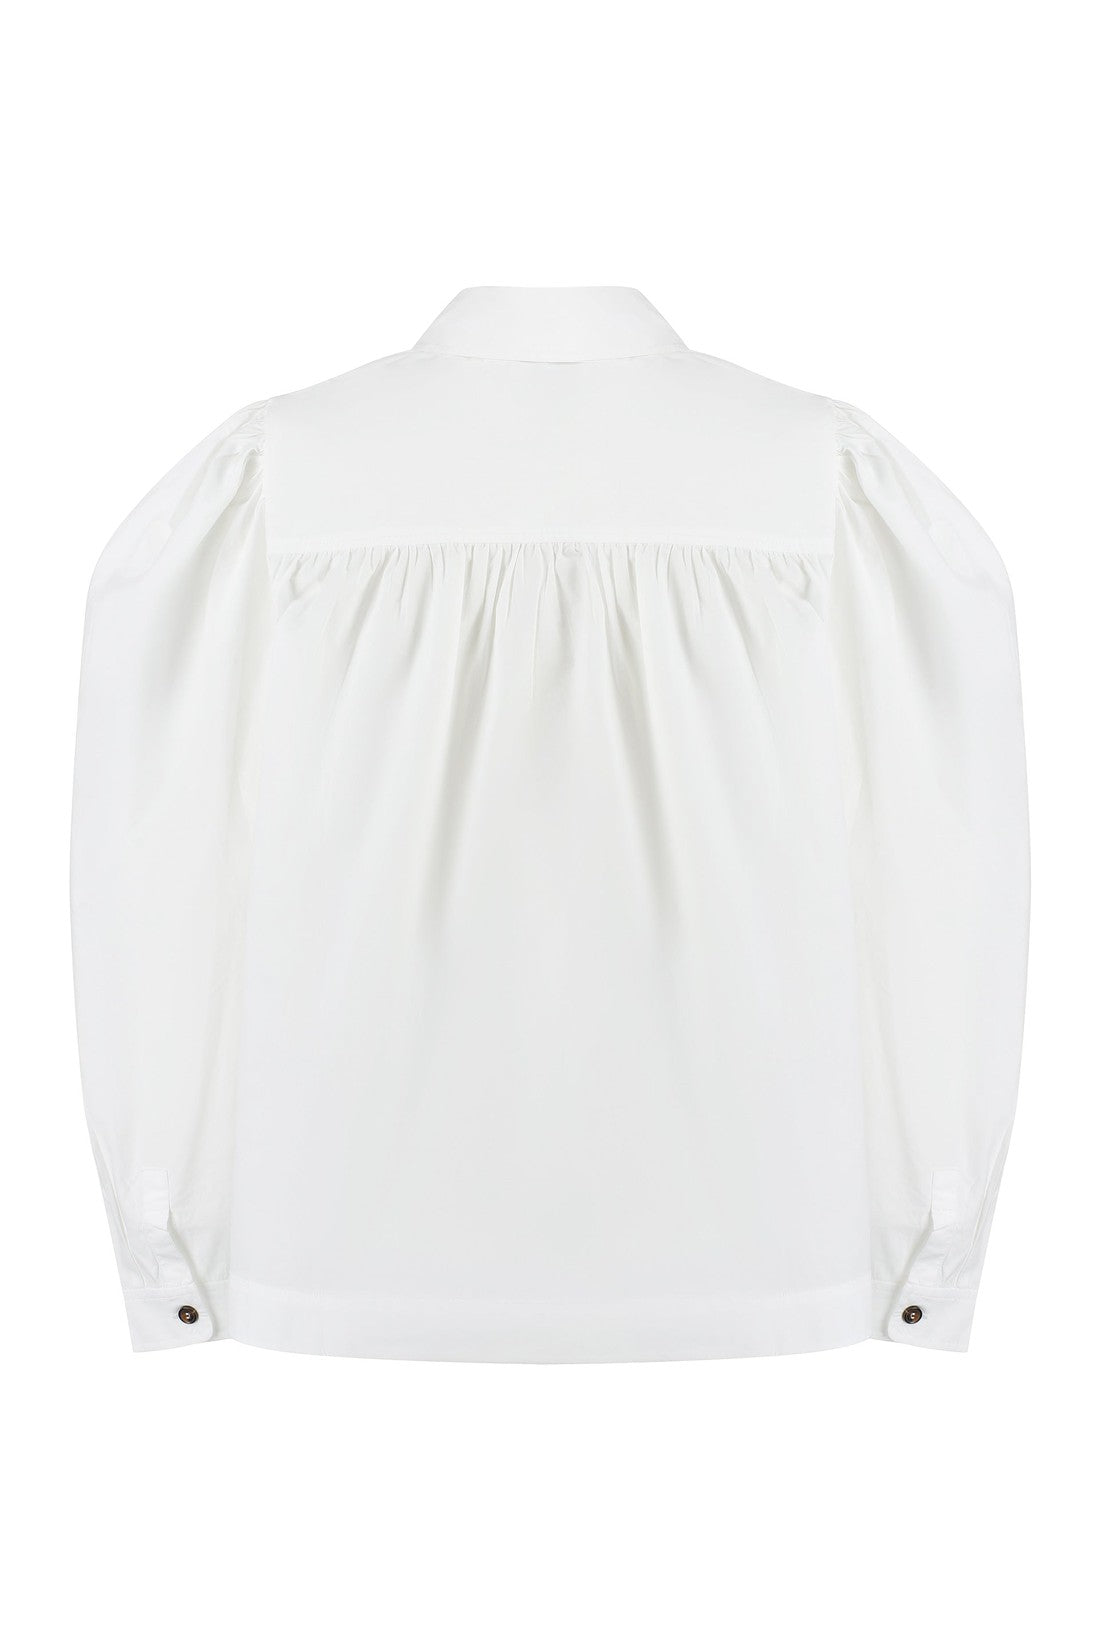 GANNI-OUTLET-SALE-Long sleeve cotton shirt-ARCHIVIST